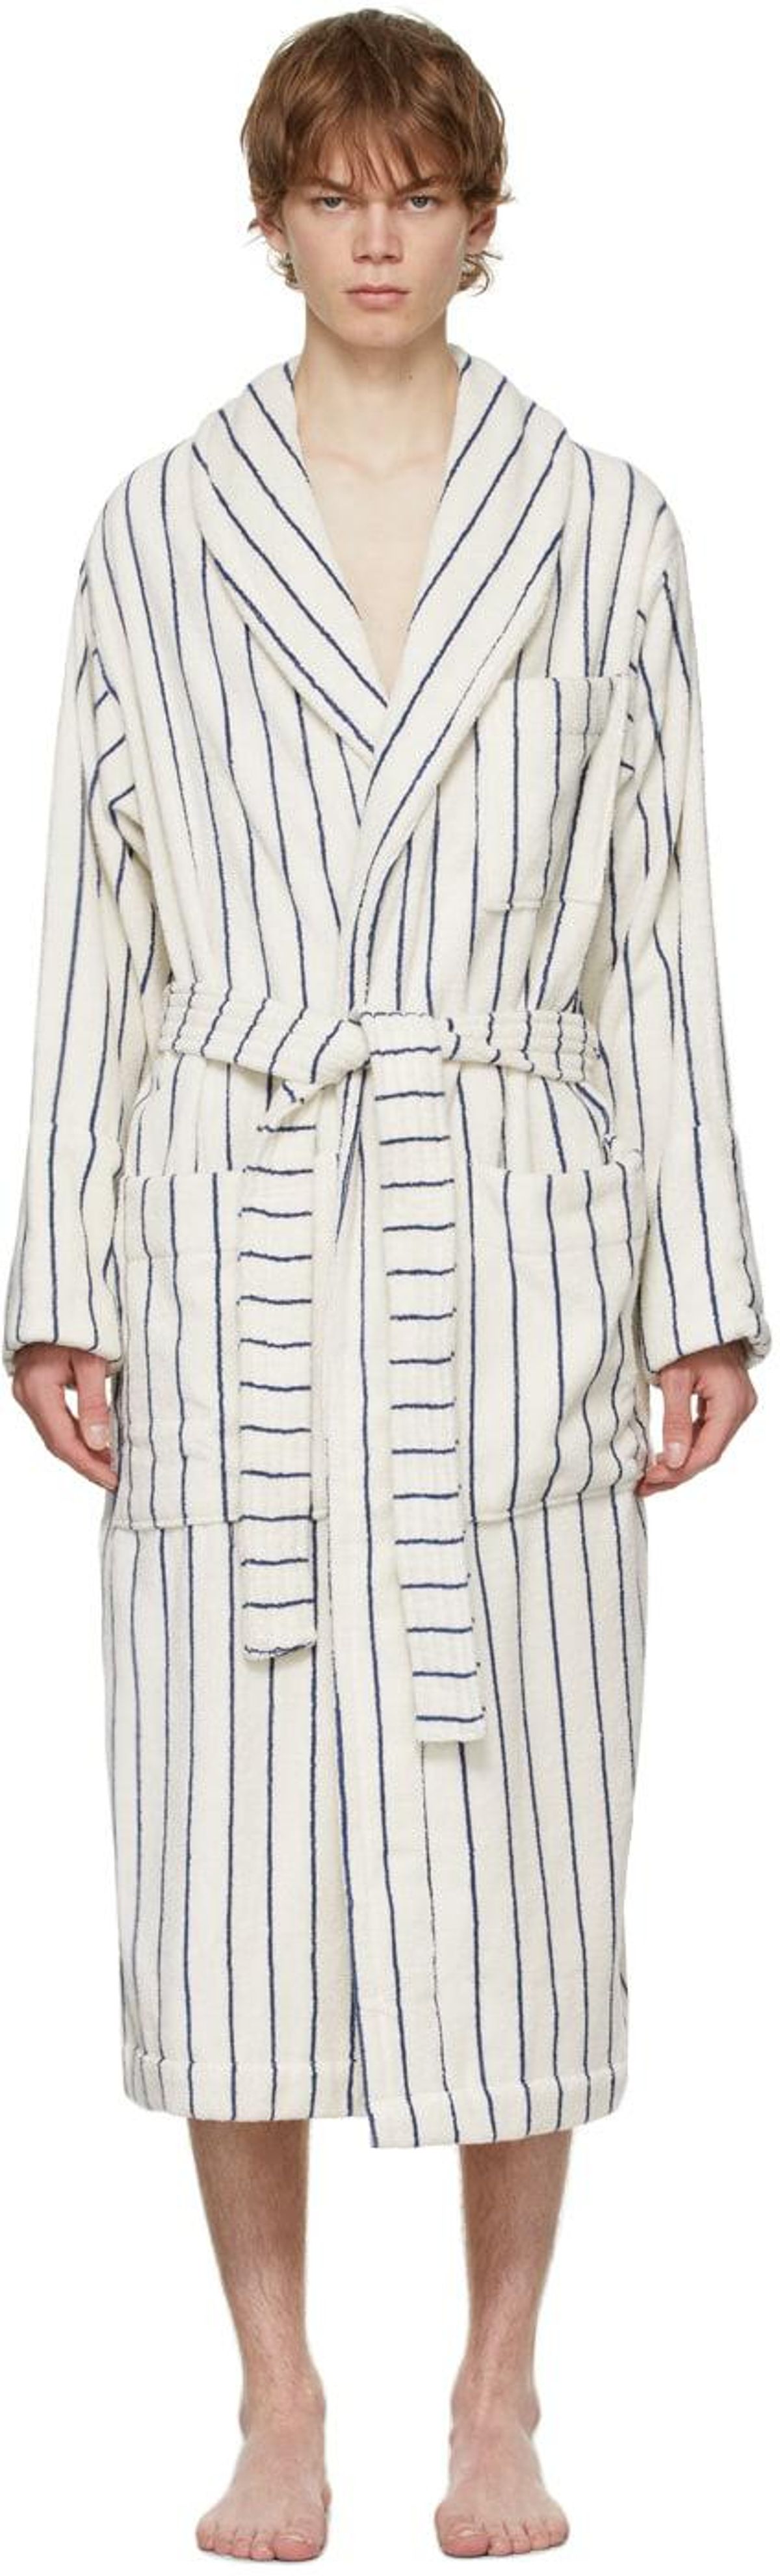 tekla classic bathrobe